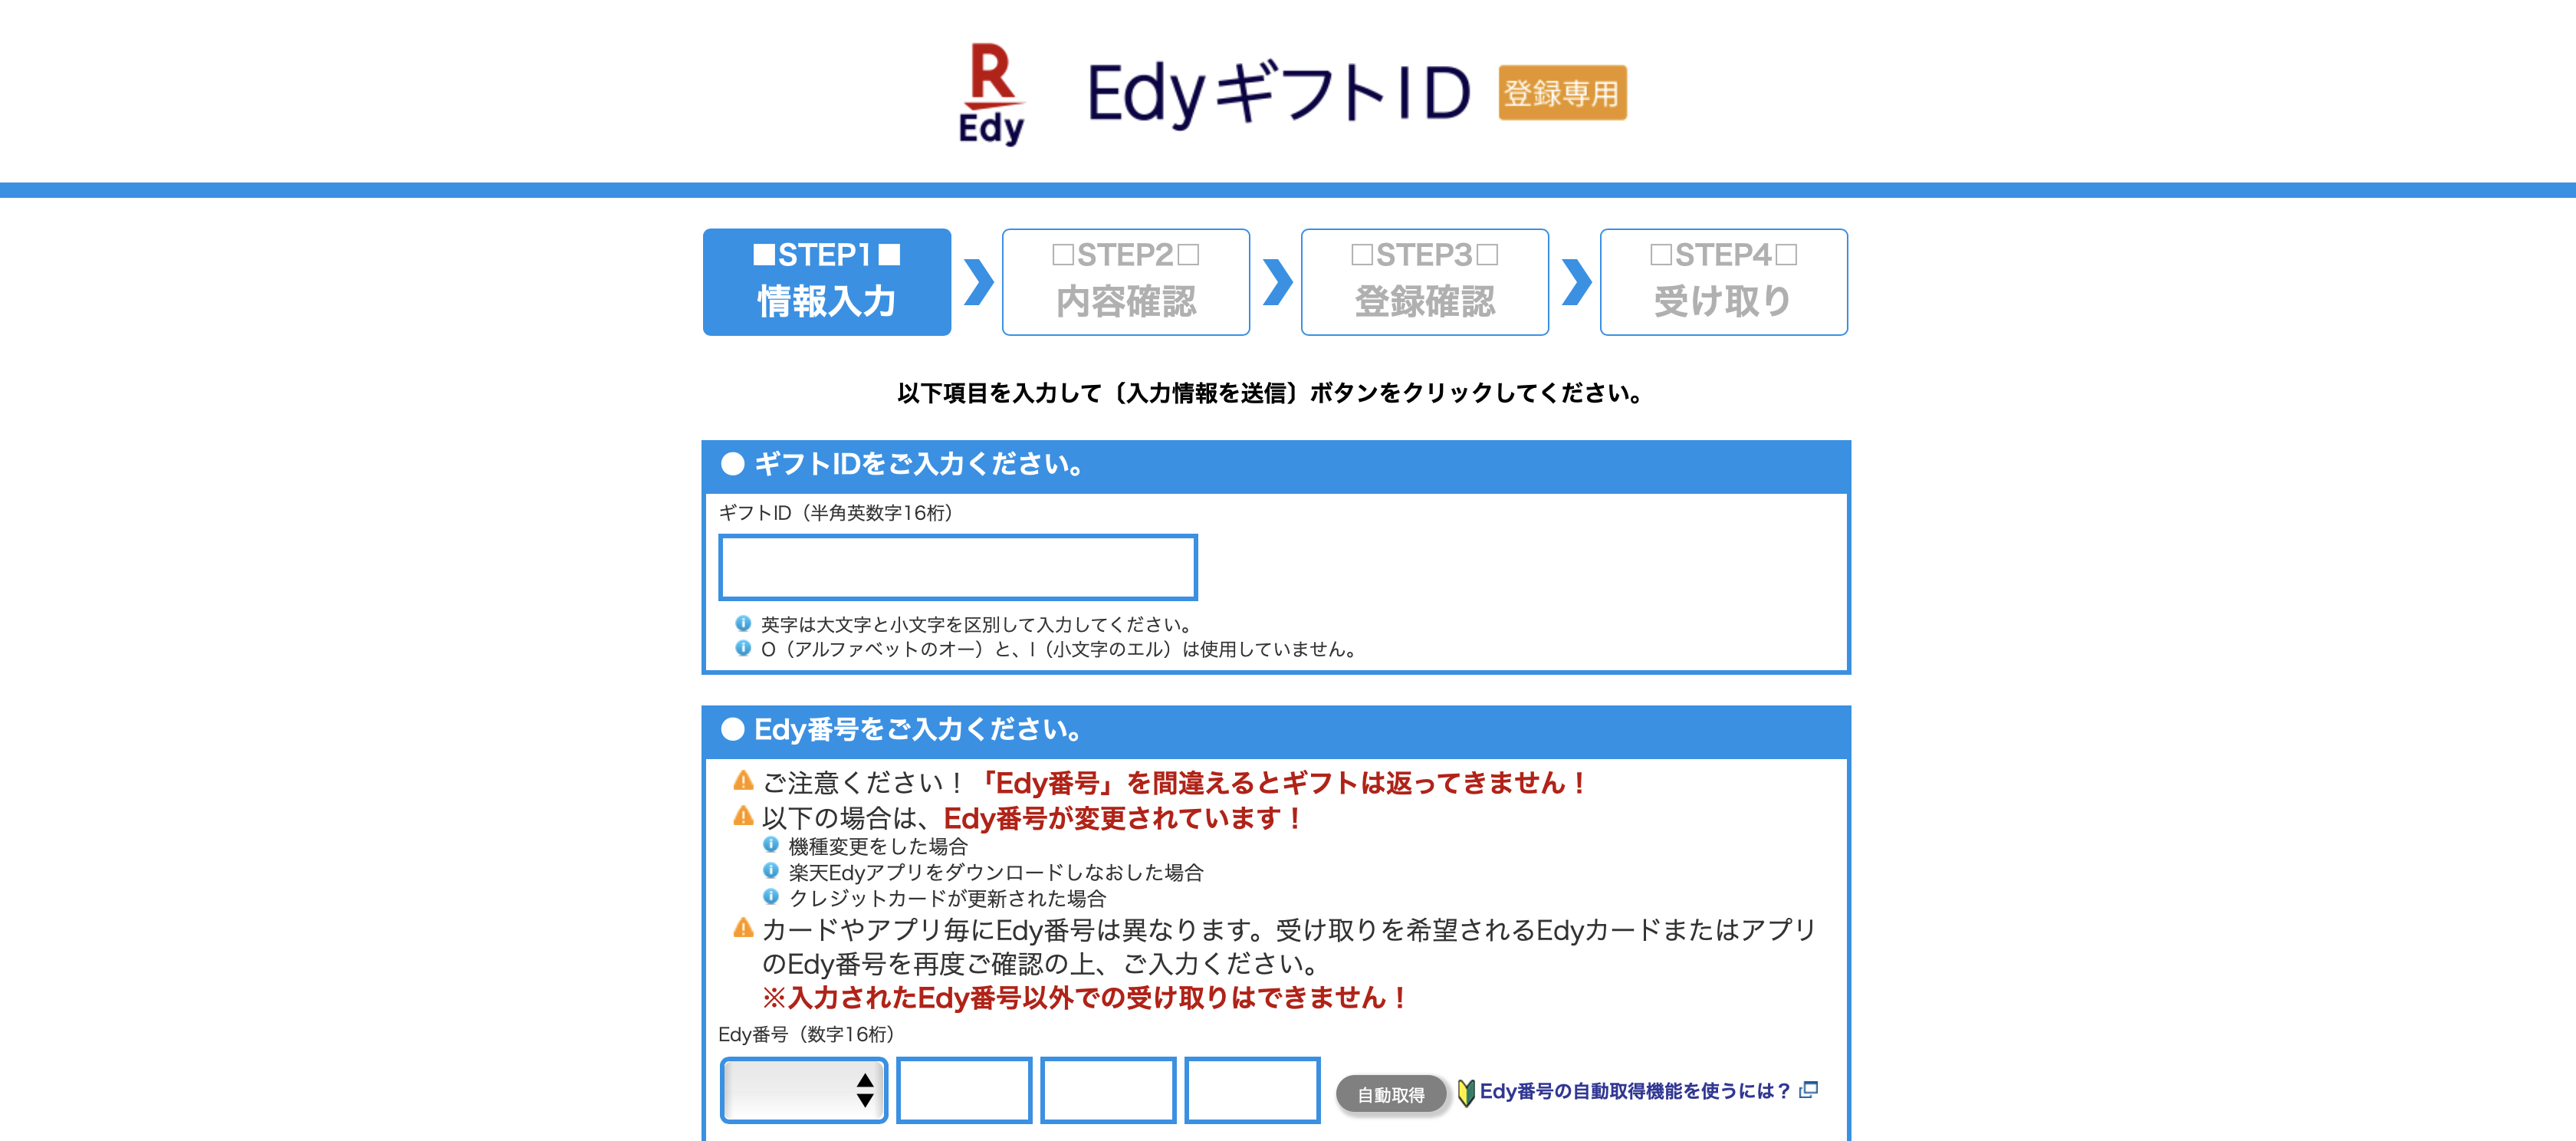 楽天EdyギフトID登録専用サイト